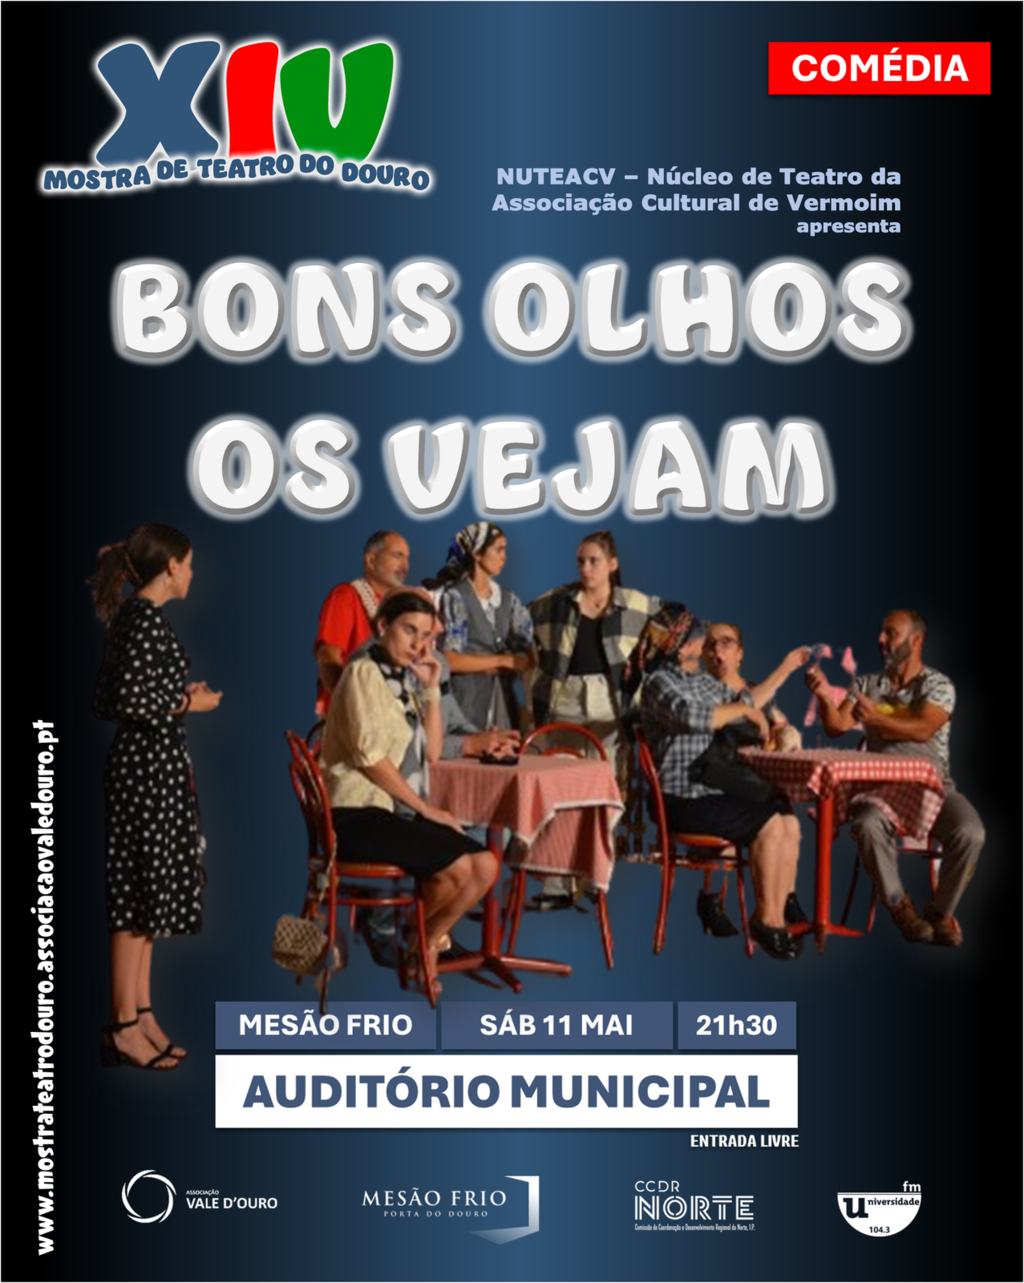 Comédia "Bons Olhos Os Vejam" - Mostra de Teatro do Douro